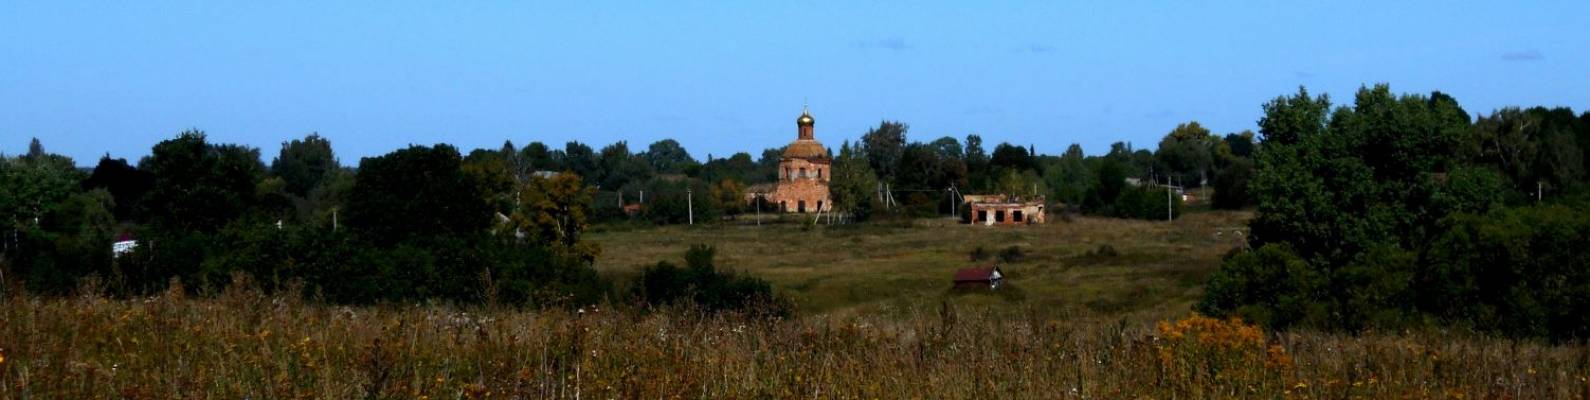  село Голощапово